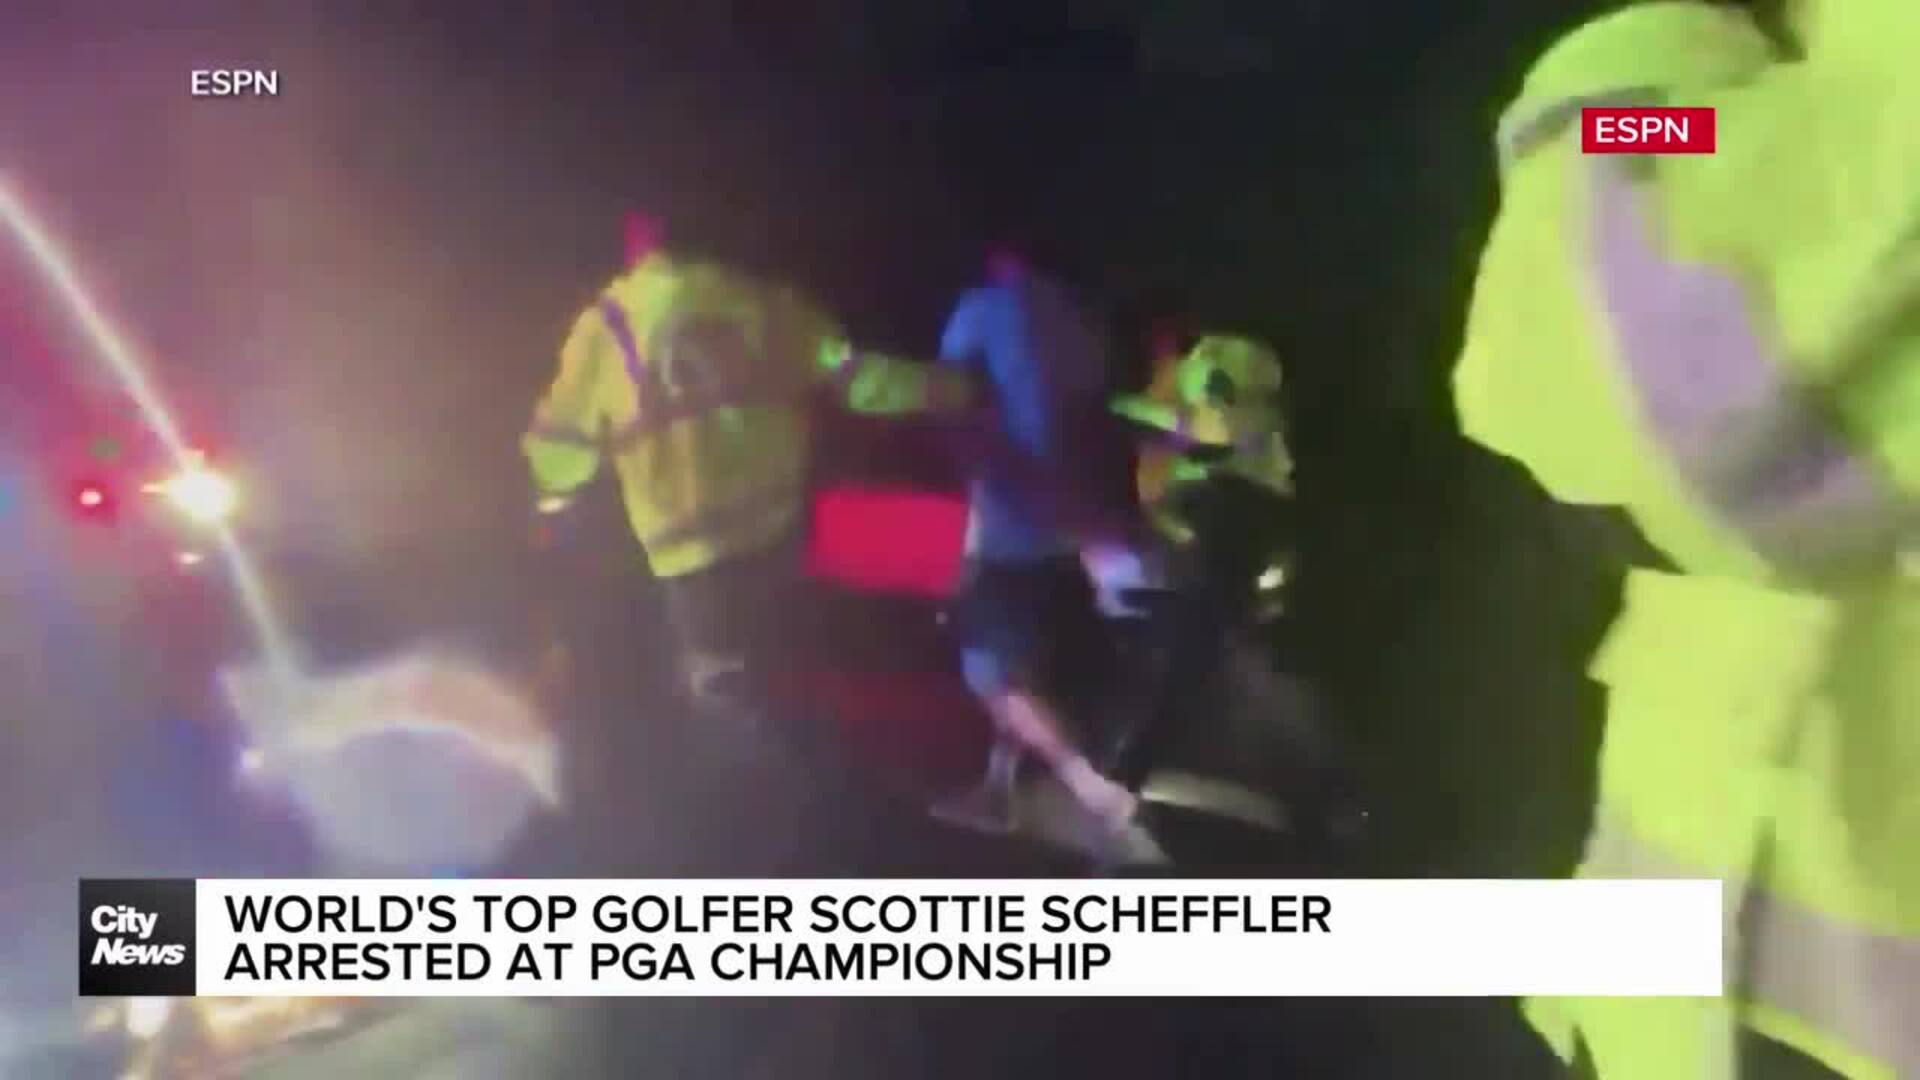 World's #1 golfer Scottie Scheffler arrested at PGA championship